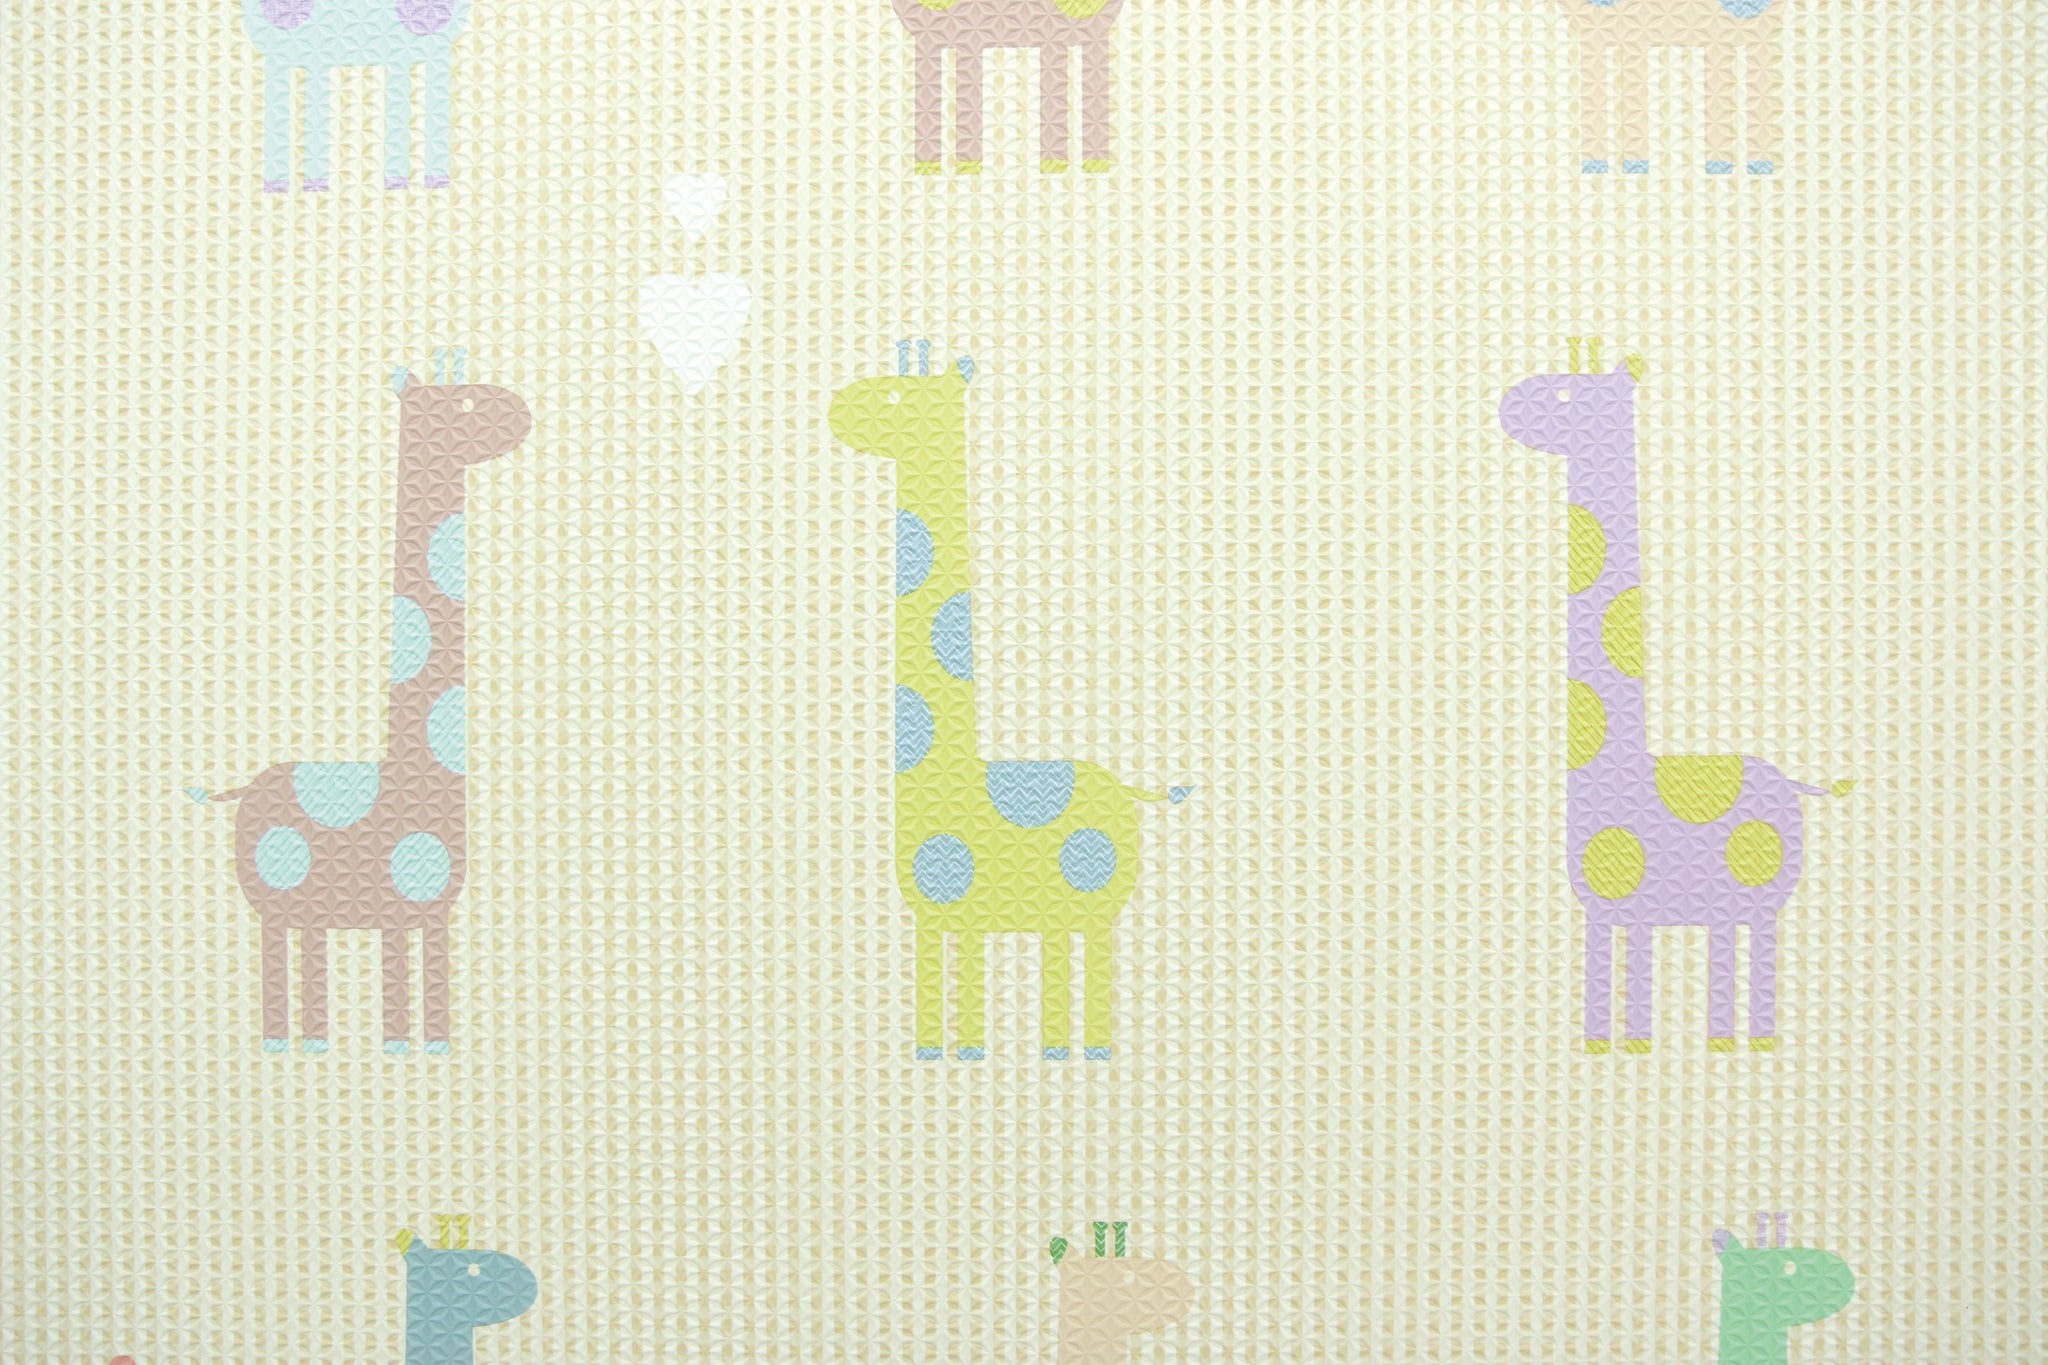 BABYCARE Playmat -Giraffe in Love